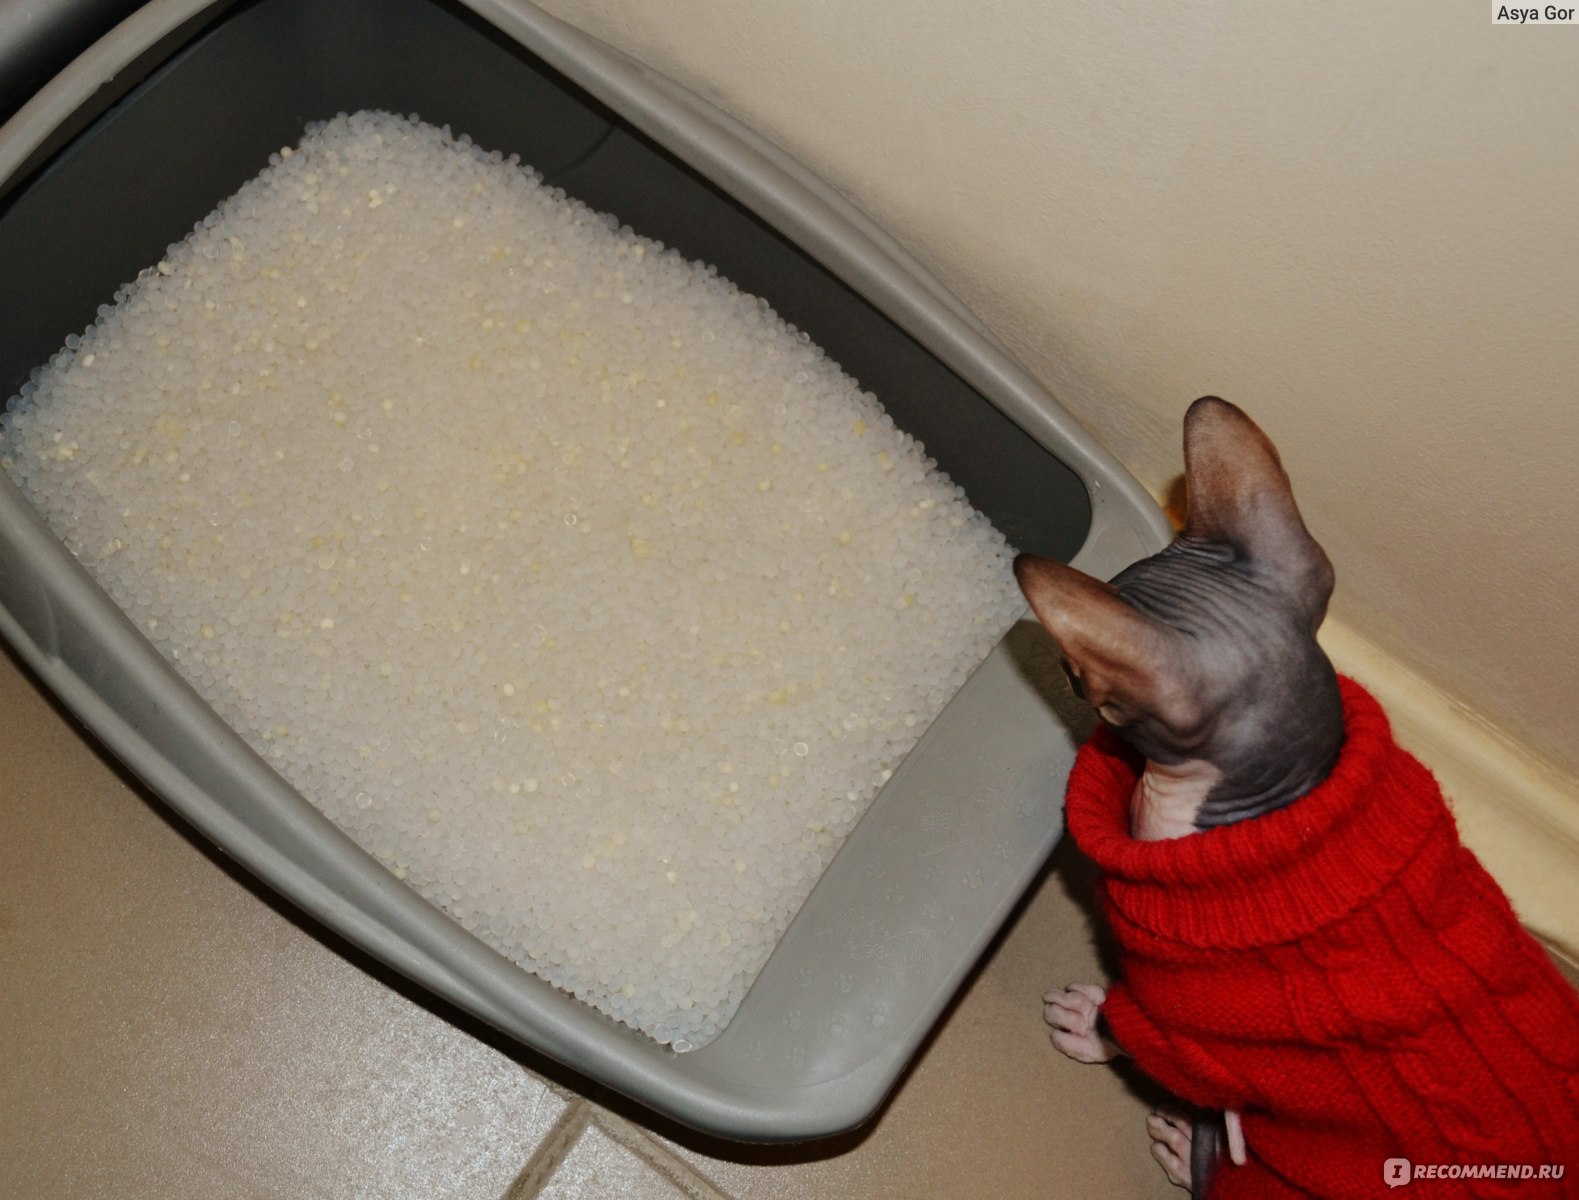 Сода для мытья кошачьего туалета